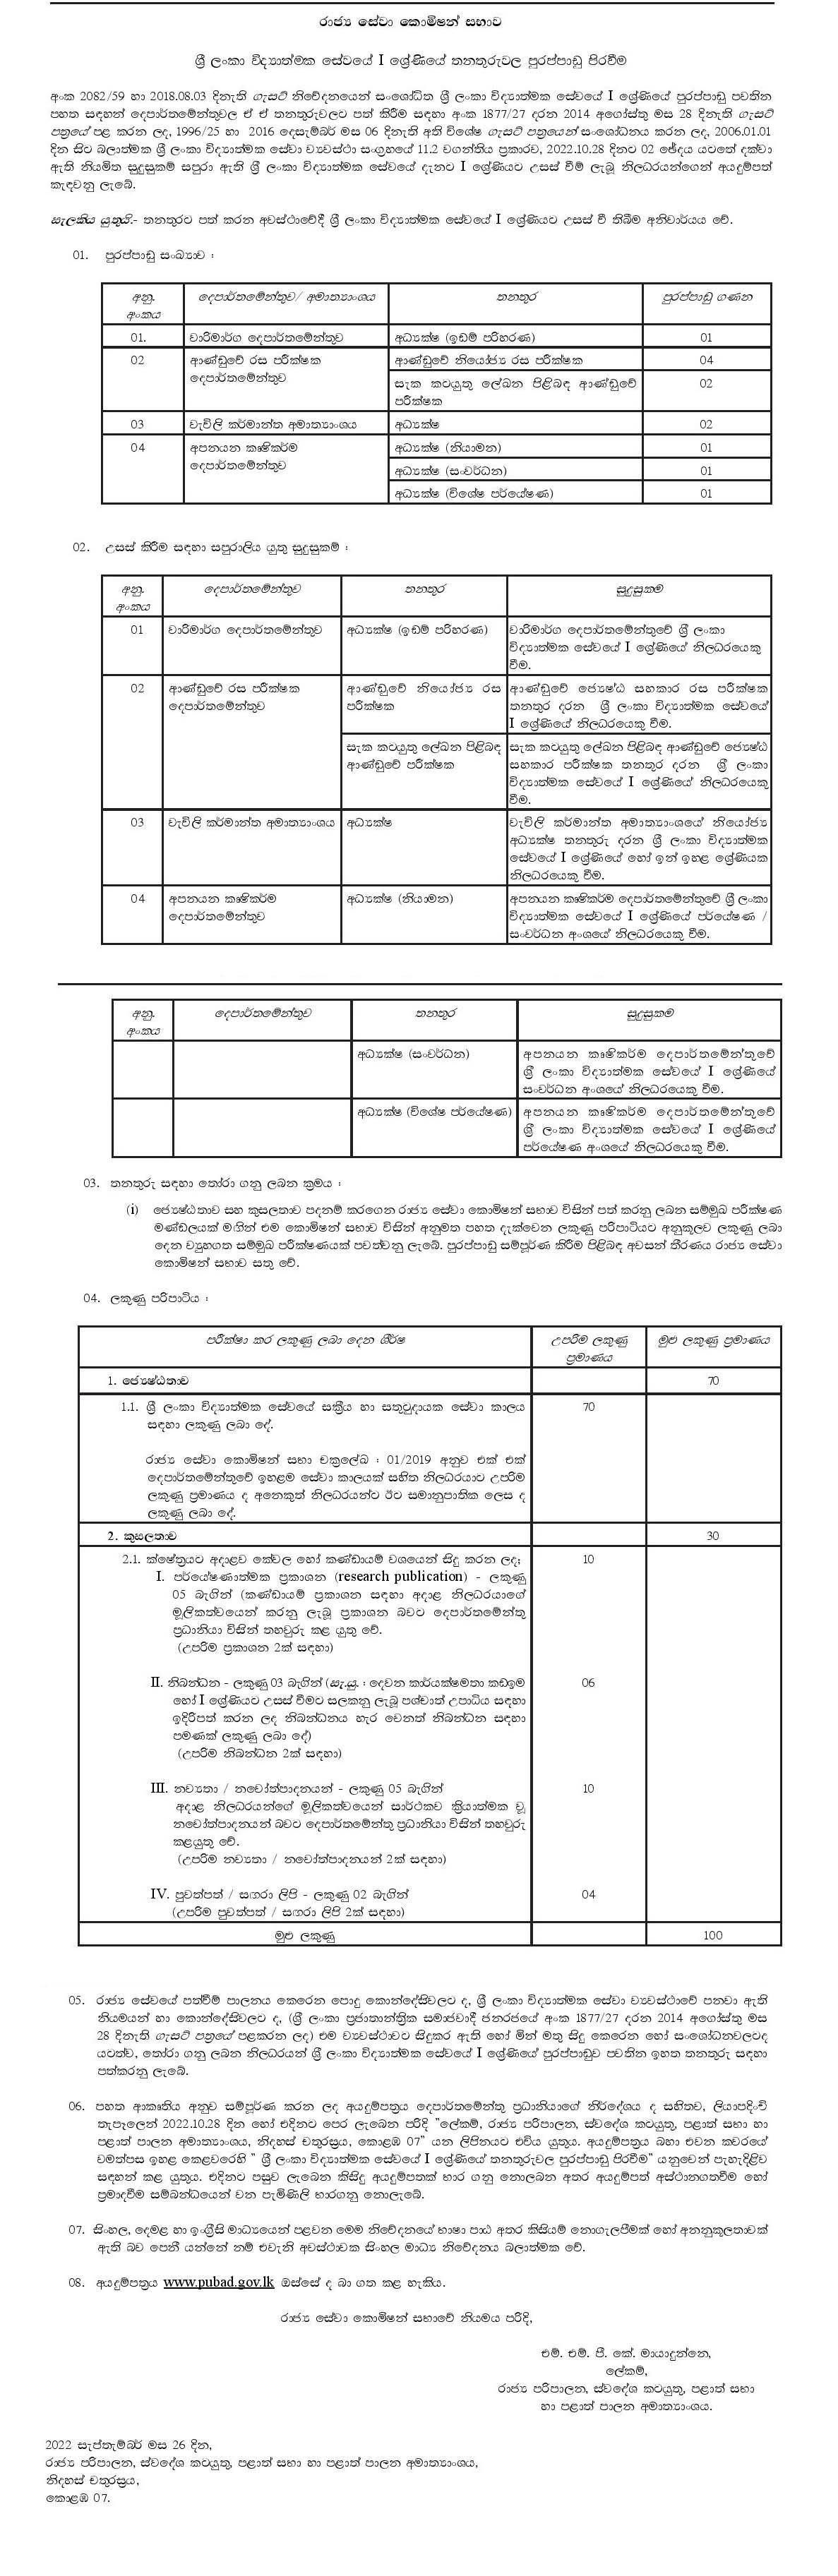 Sri Lanka Scientific Service Grade 1 - Public Service Commission